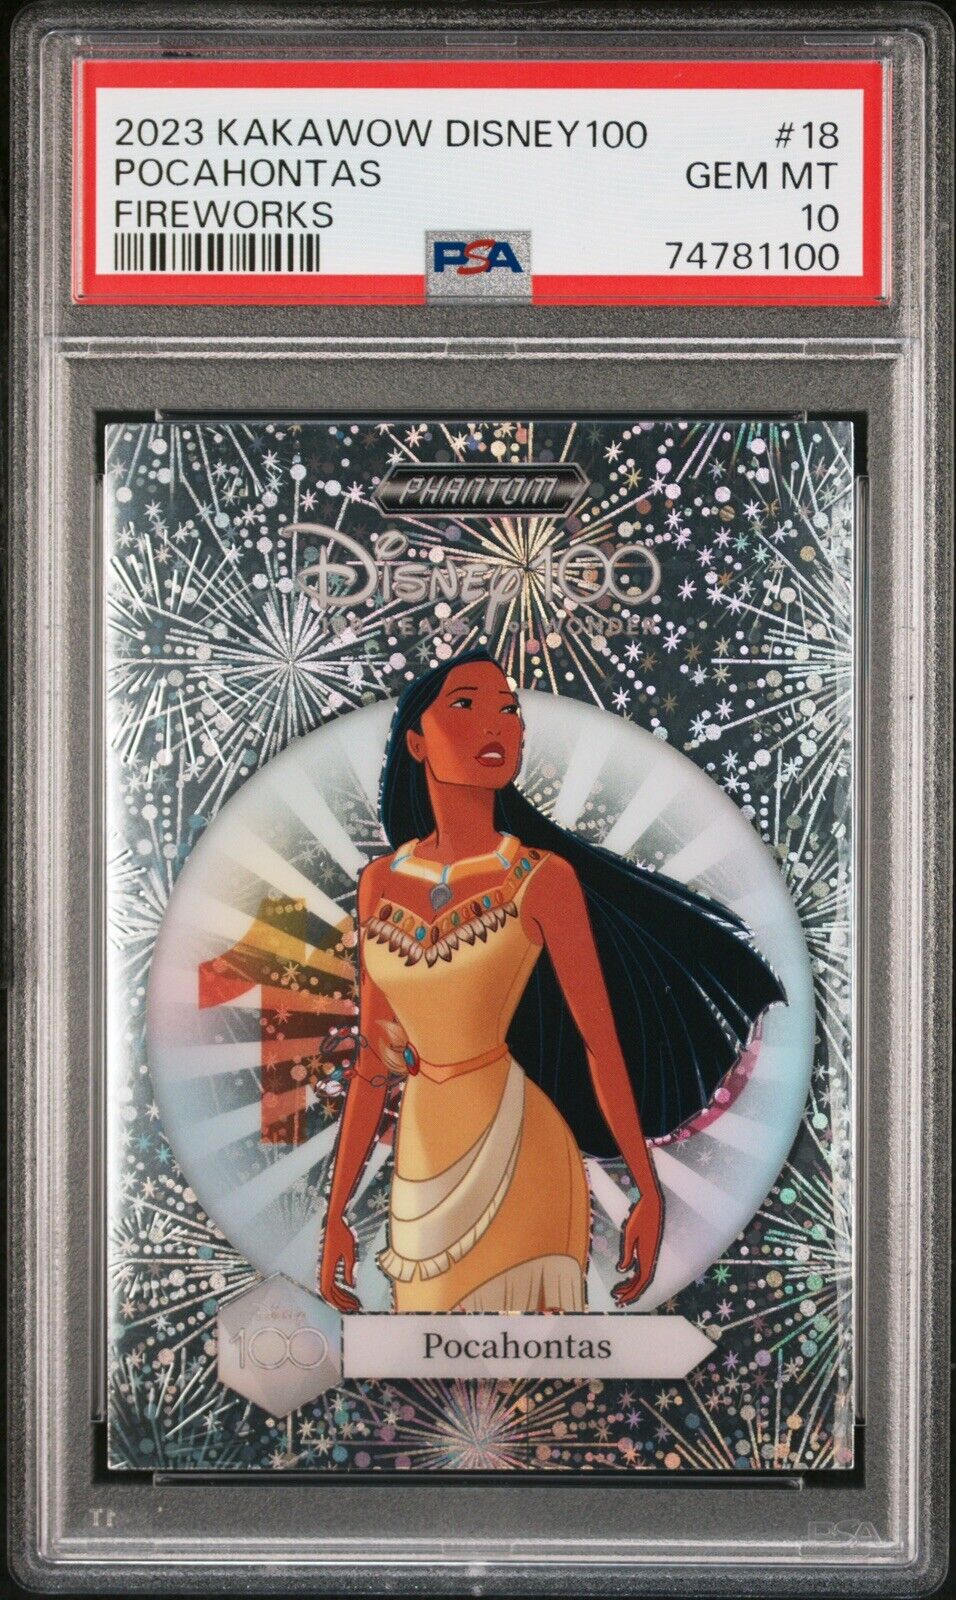 PSA 10 Pocahontas Kakawow Phantom Disney 100 Fireworks /100